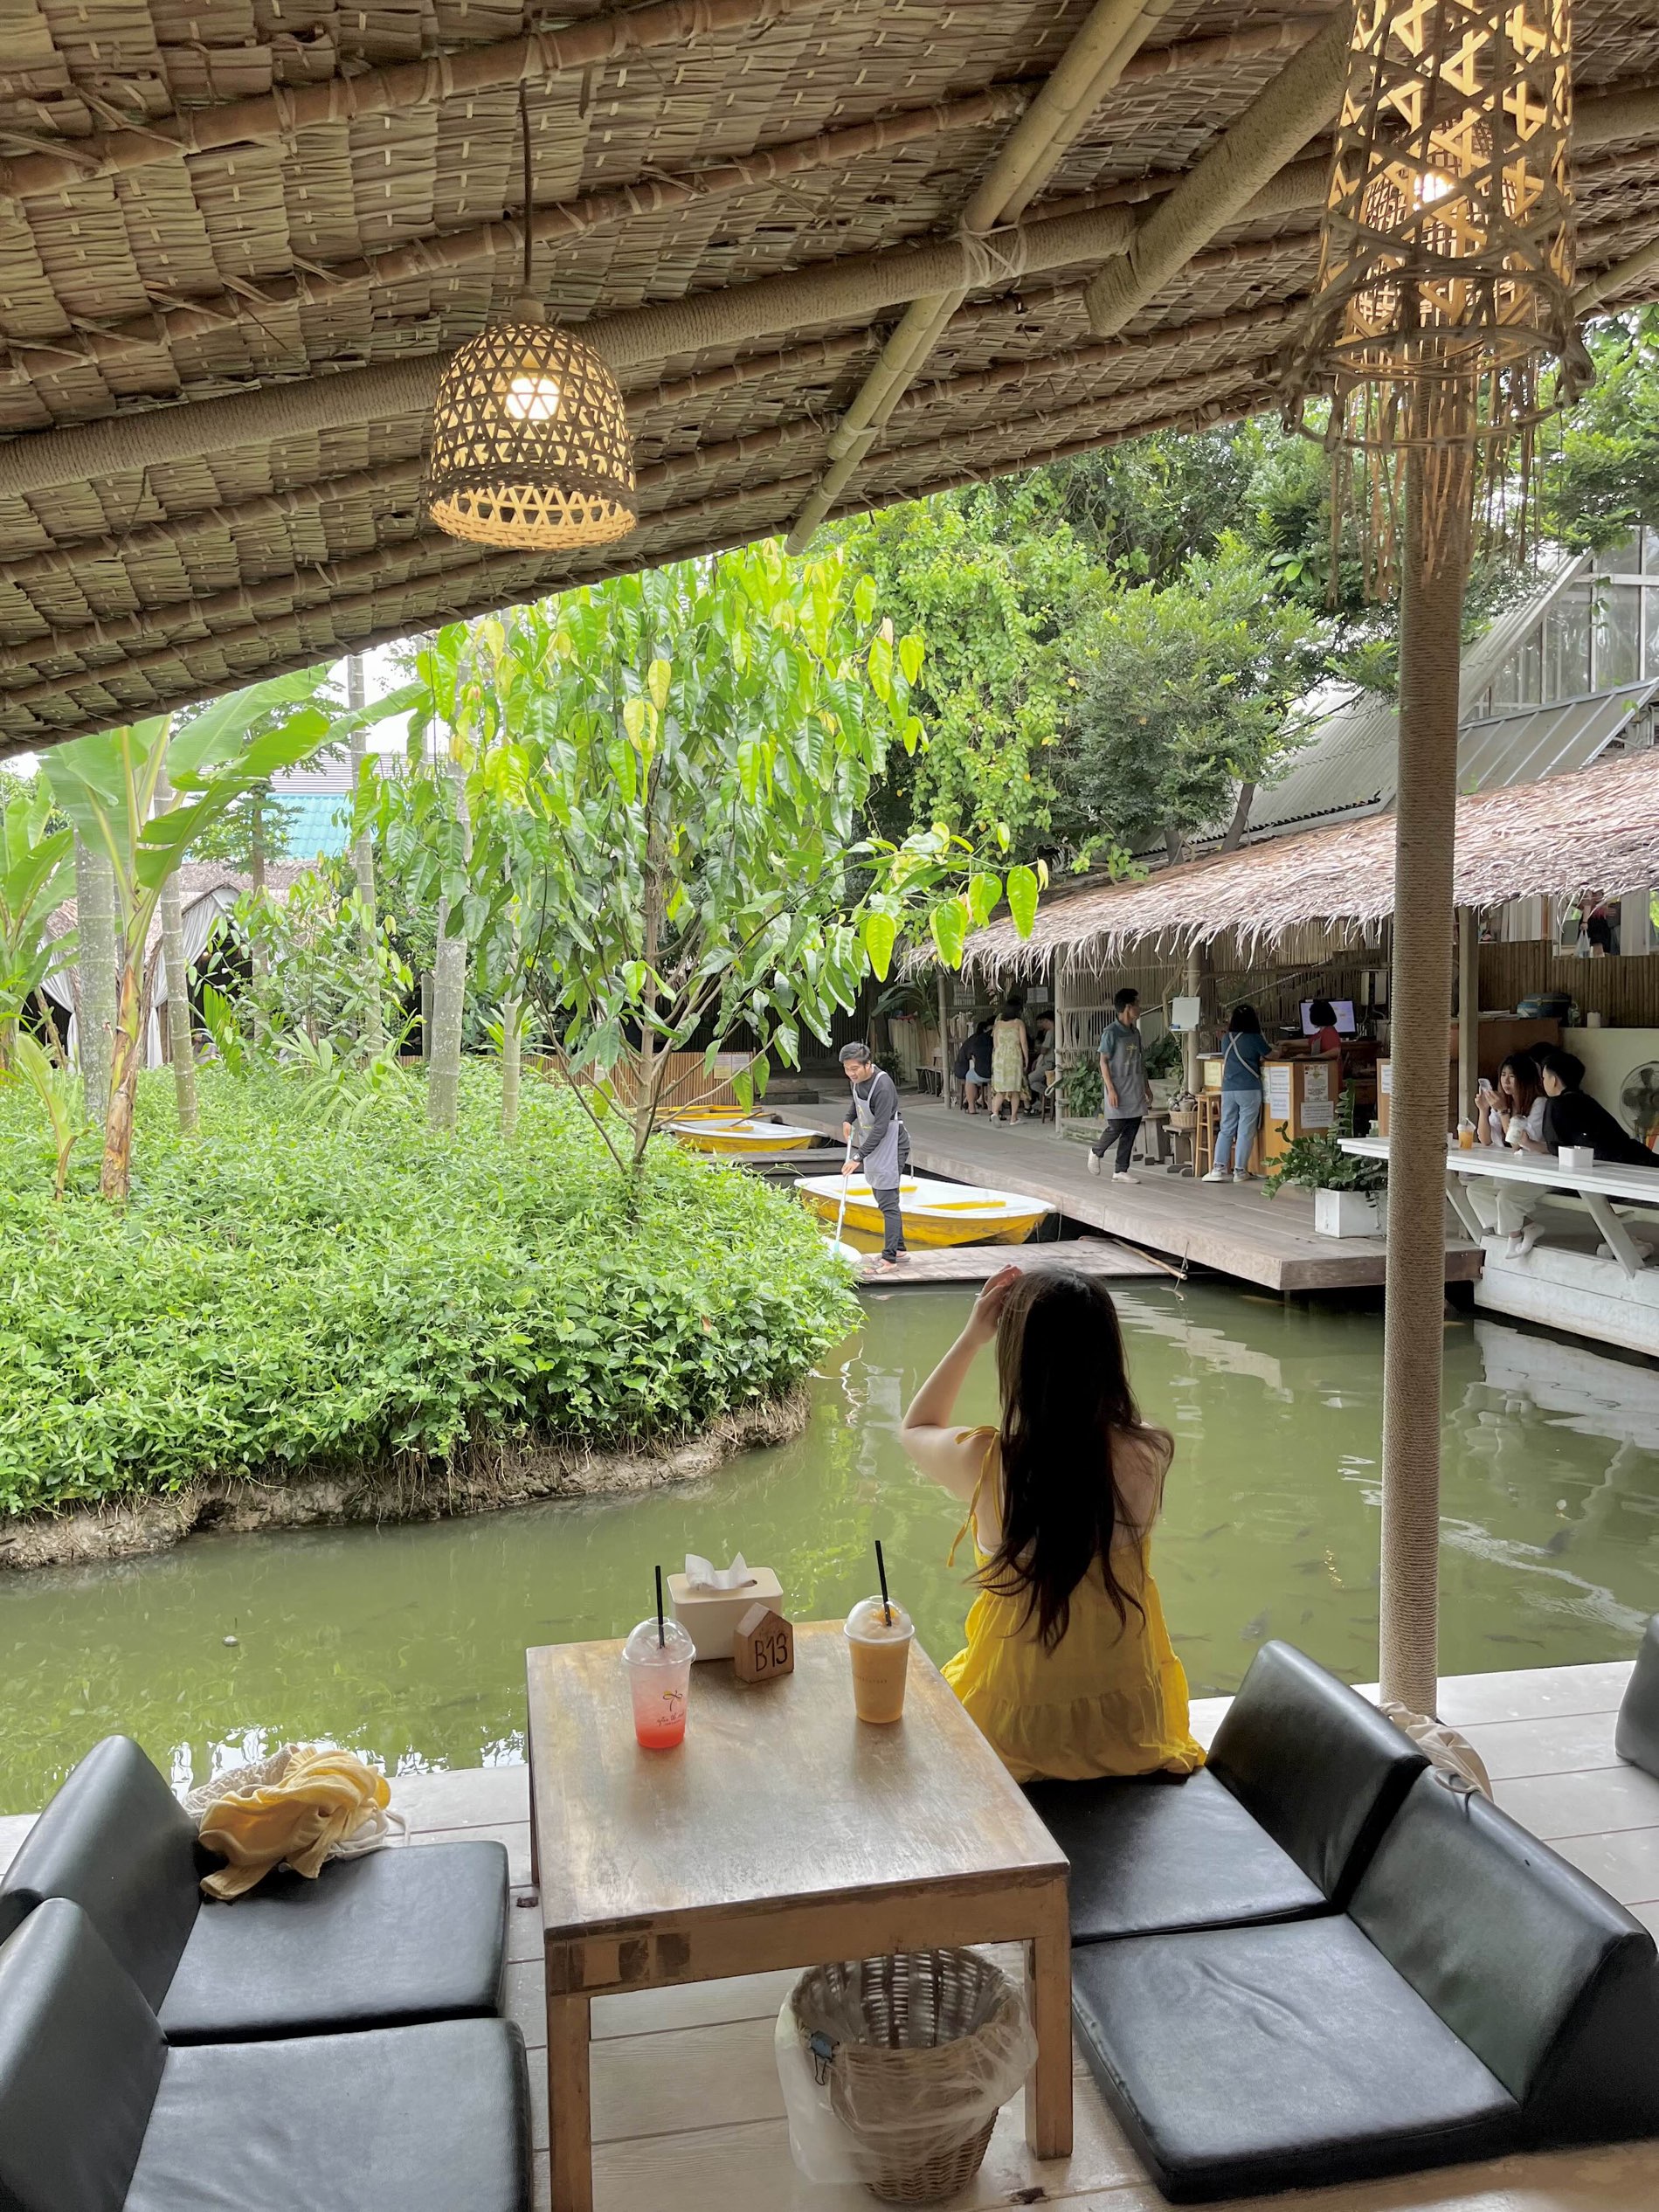 曼谷充满当地感性的曼谷必修路线咖啡厅